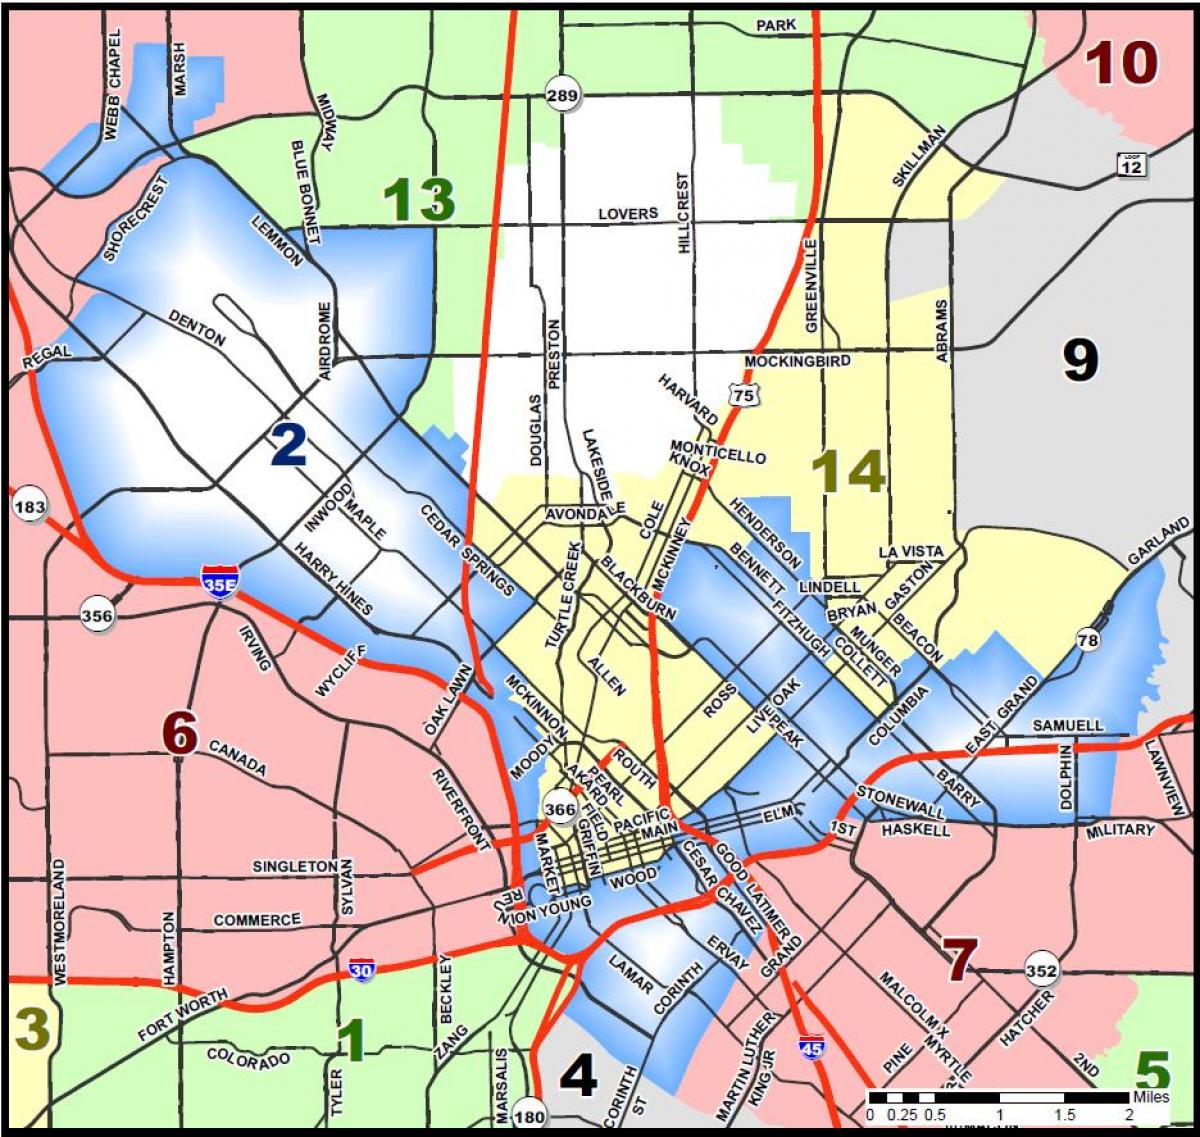 byen Dallas zoneinddeling kort